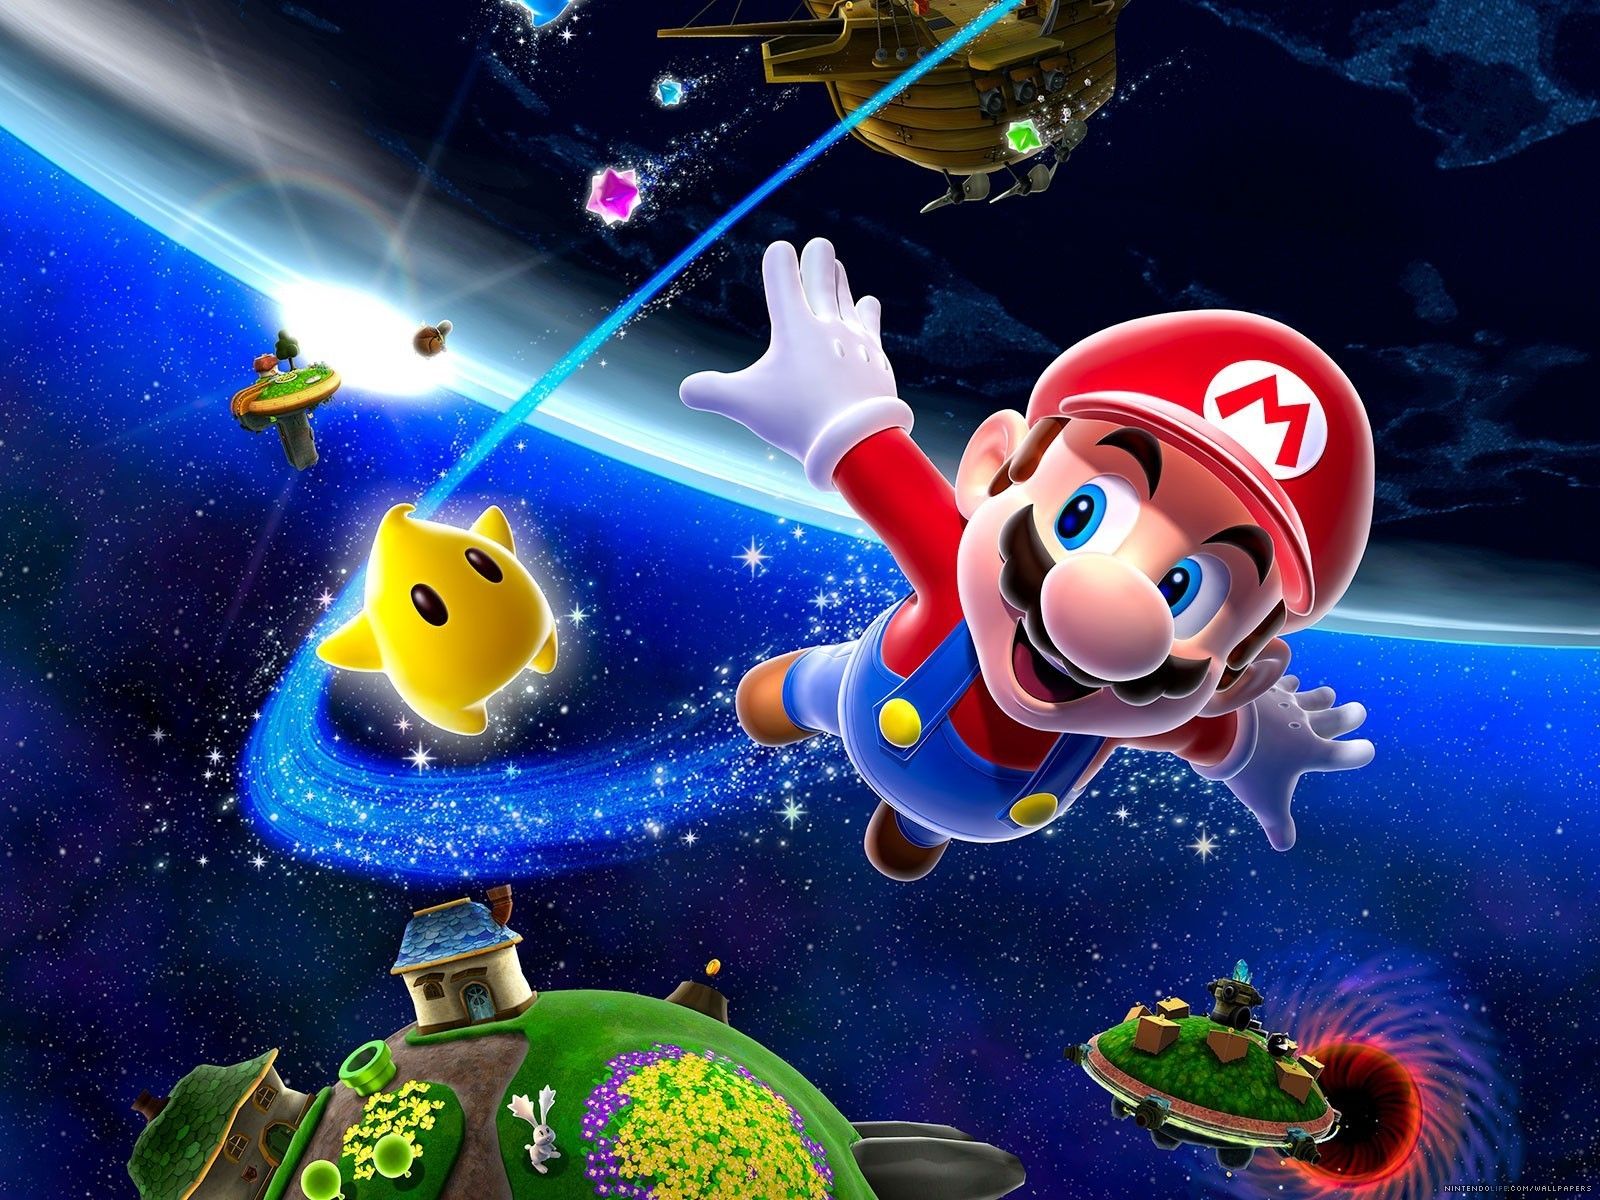 Super Mario Galaxy Wallpaper - Super Mario Bros. Wallpaper